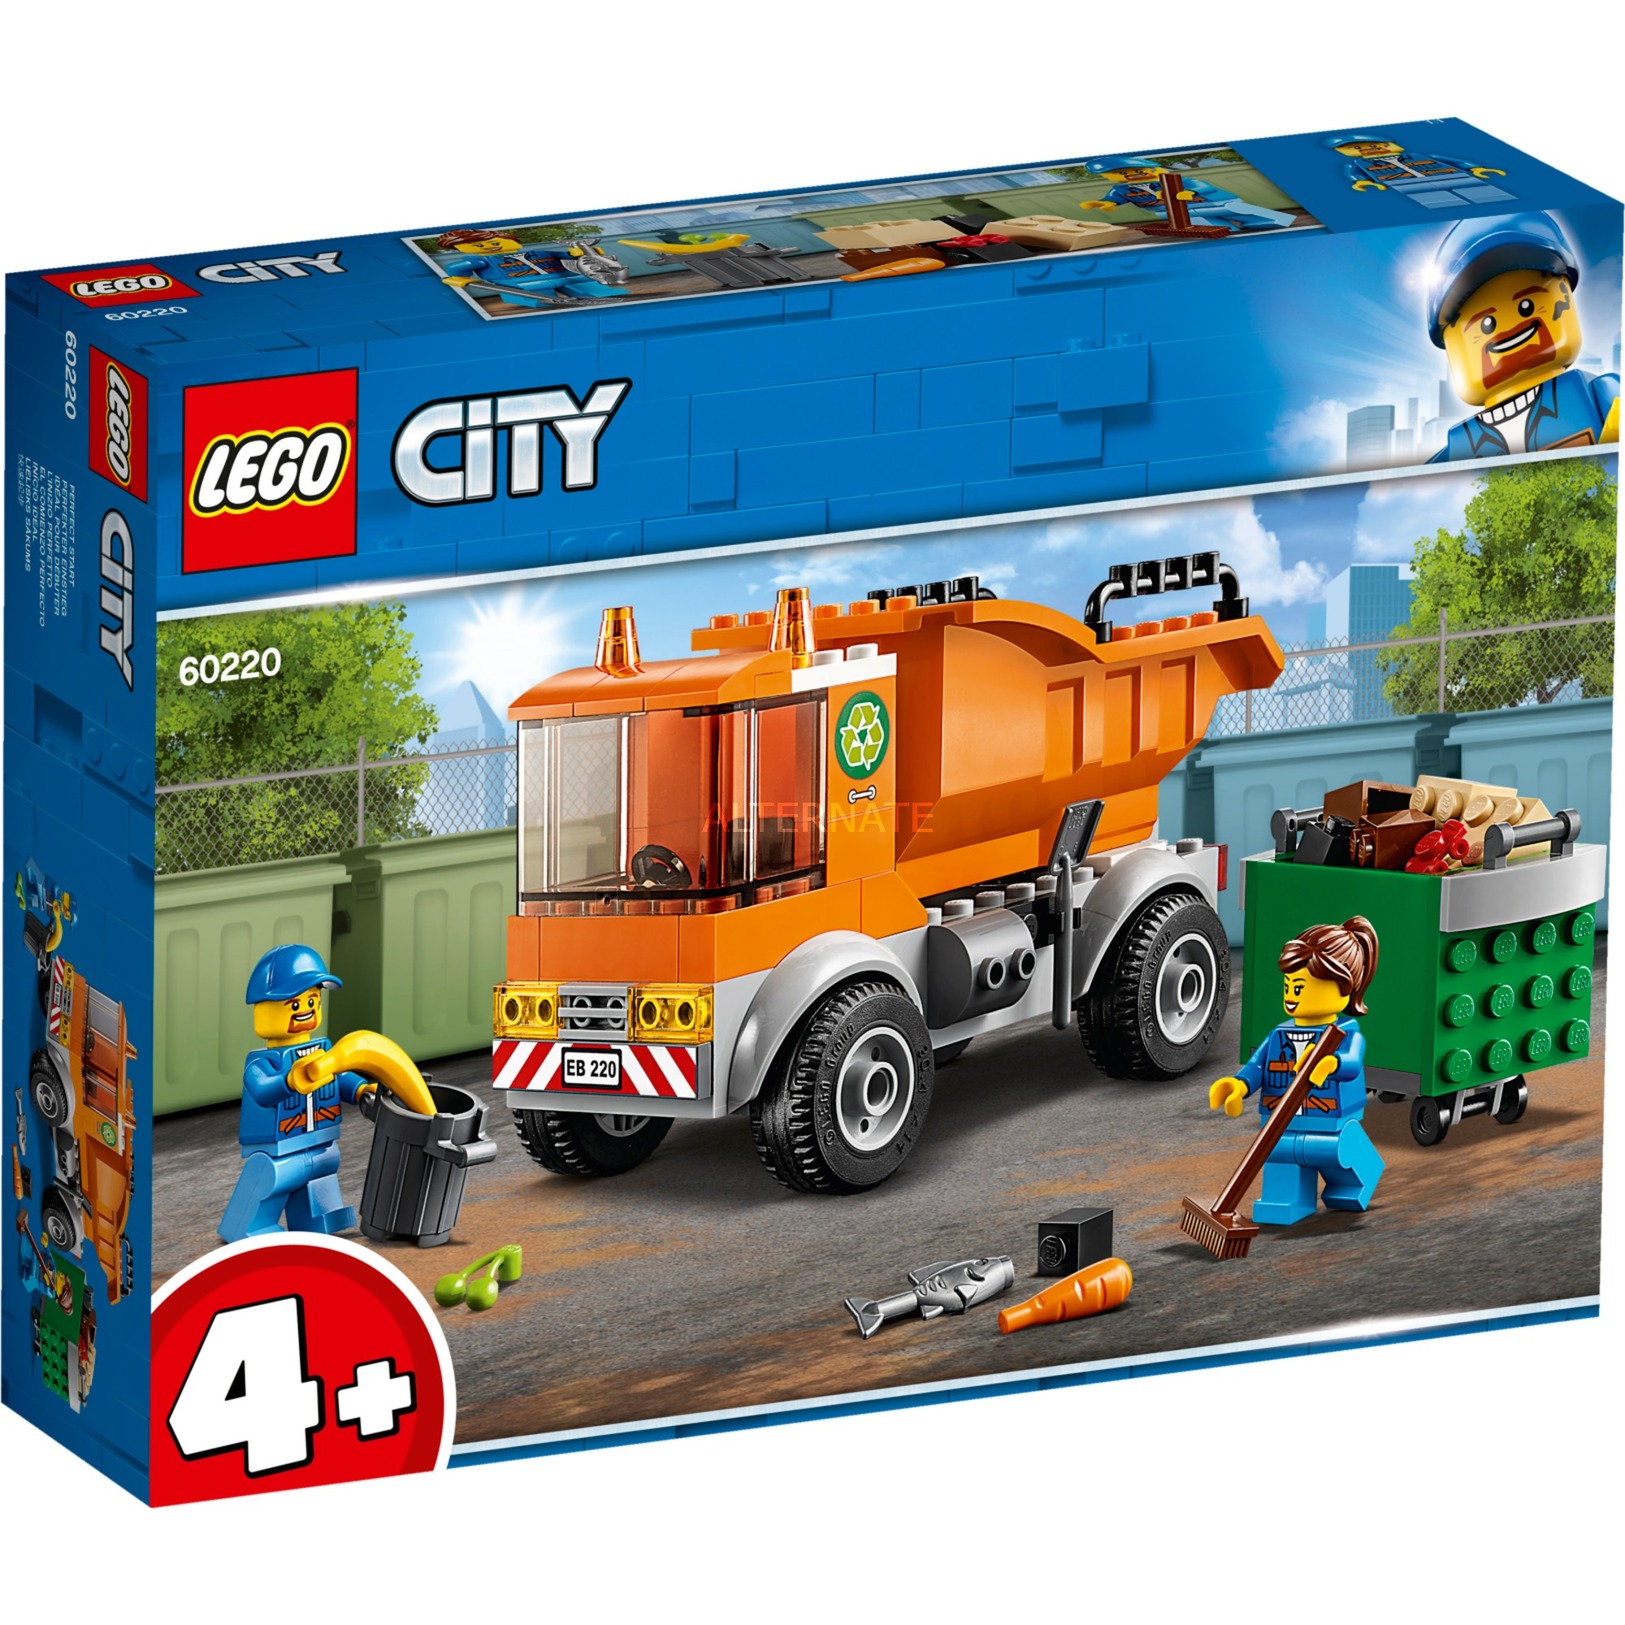 Bild zu Lego City Müllabfuhr (60220) für 10,99€ (Vergleich: 16,89€)